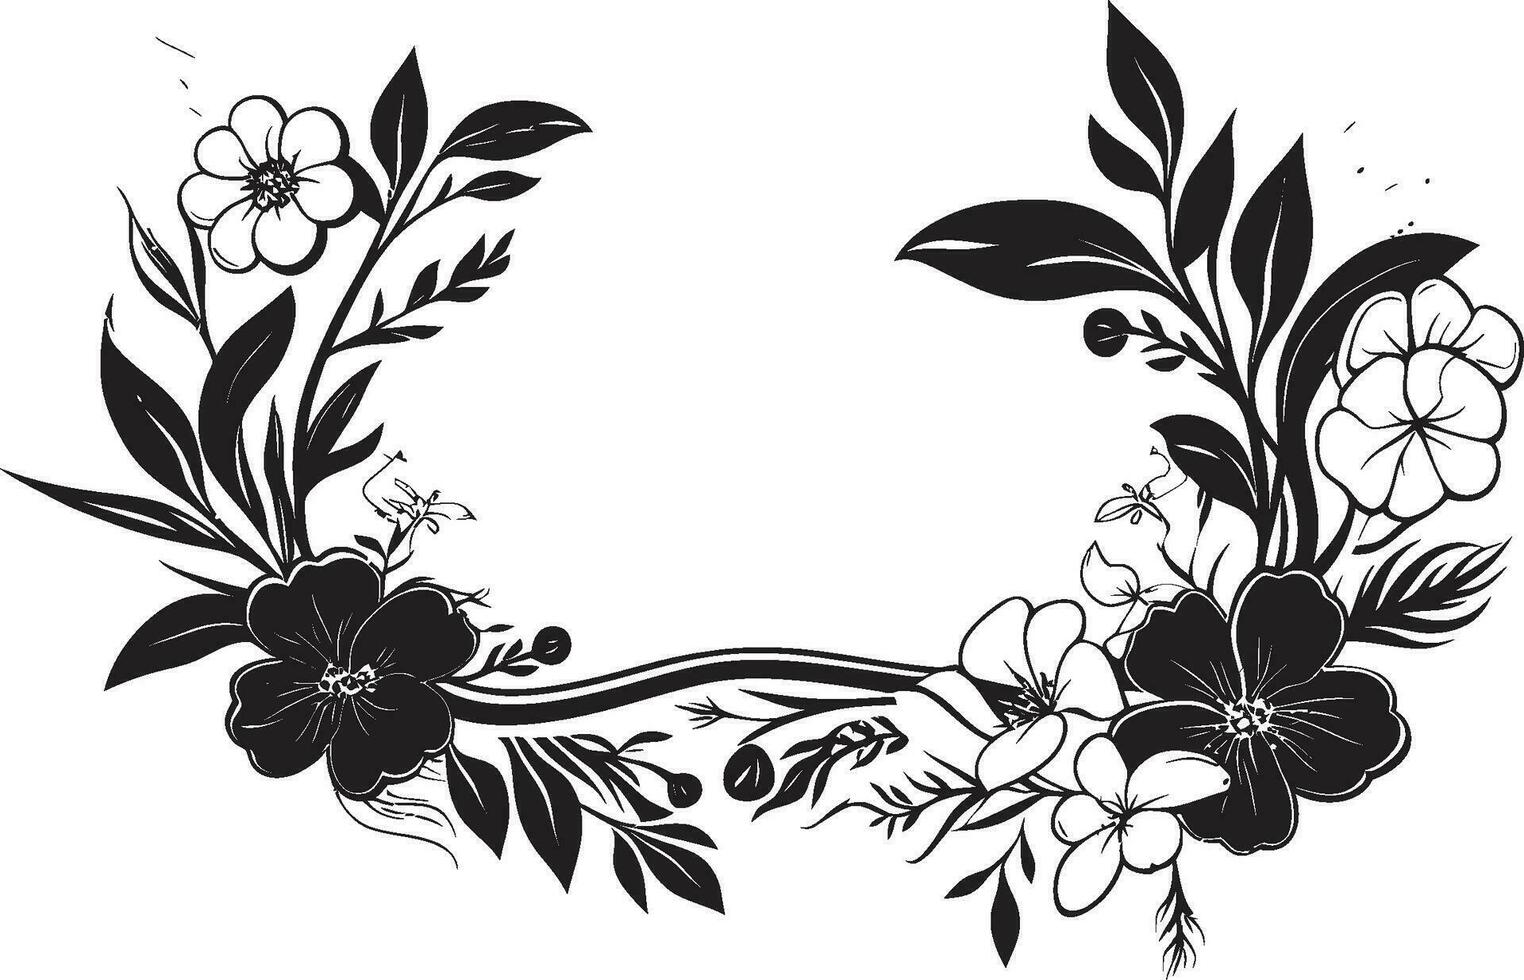 Sophisticated Midnight Floral Enclosure Vector Emblem Whimsical Botanical Frame Black Floral Design